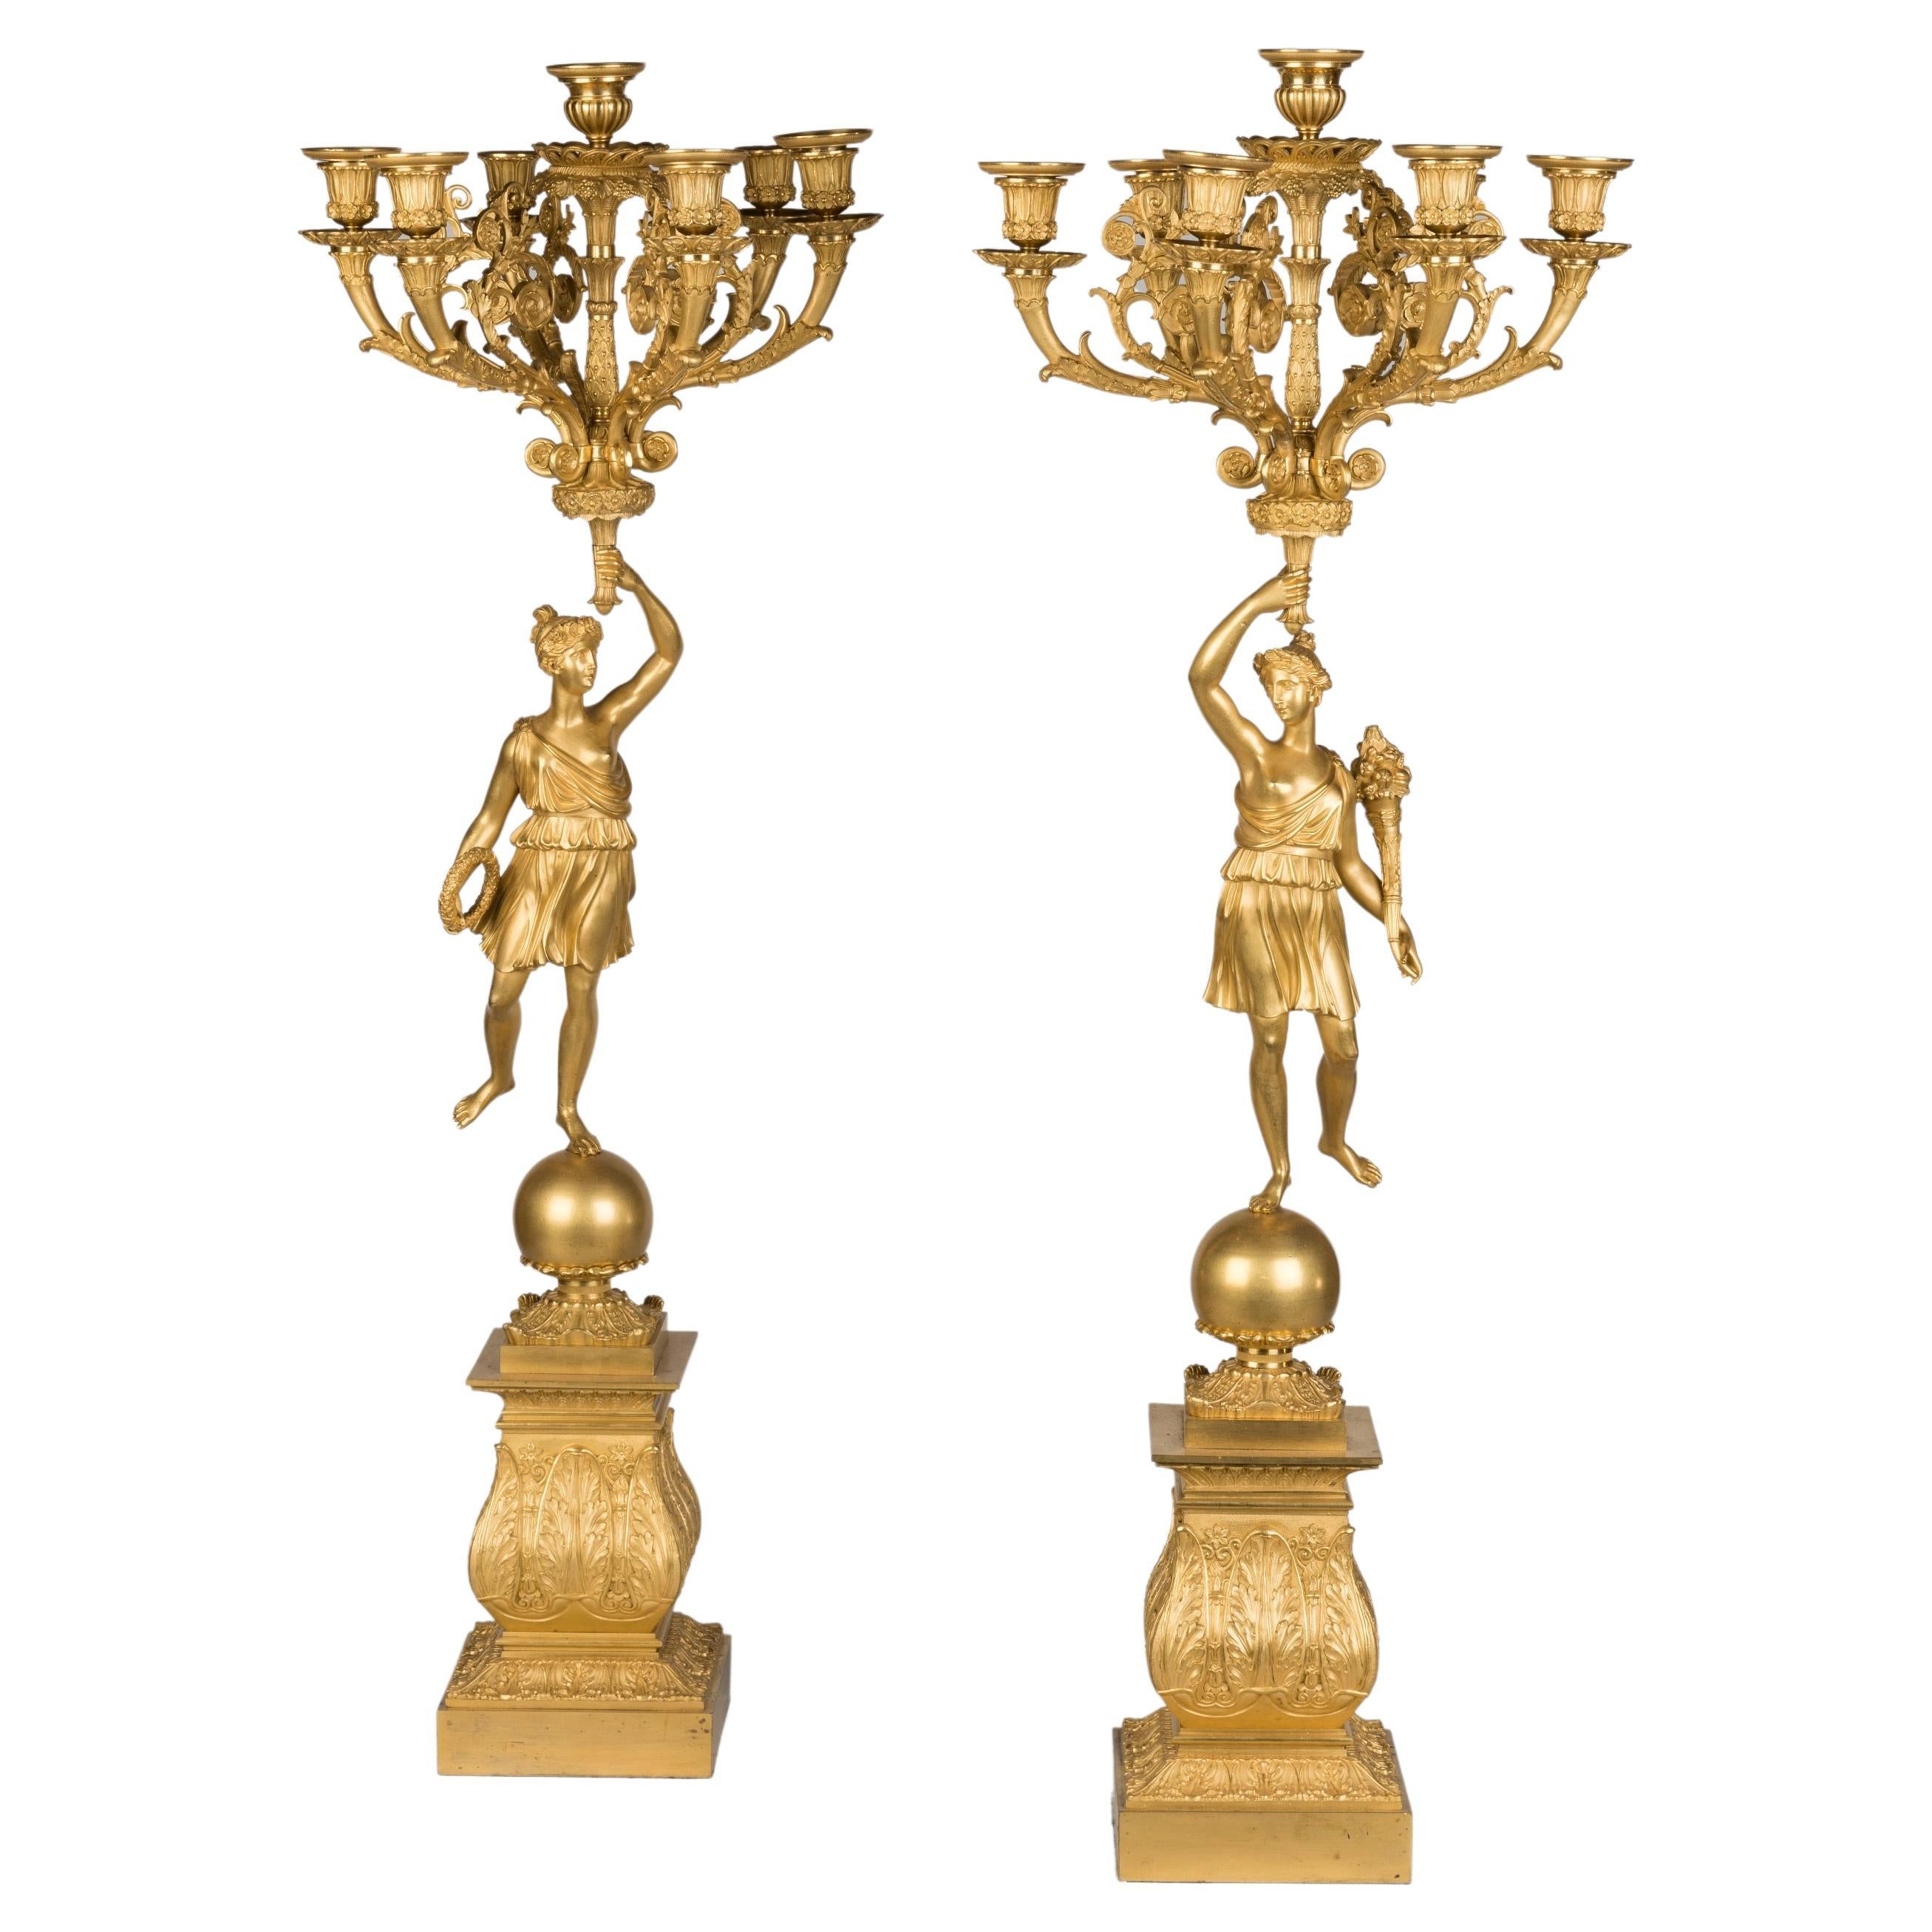 Paire de candélabres en bronze doré à la flamme du début du 19e siècle